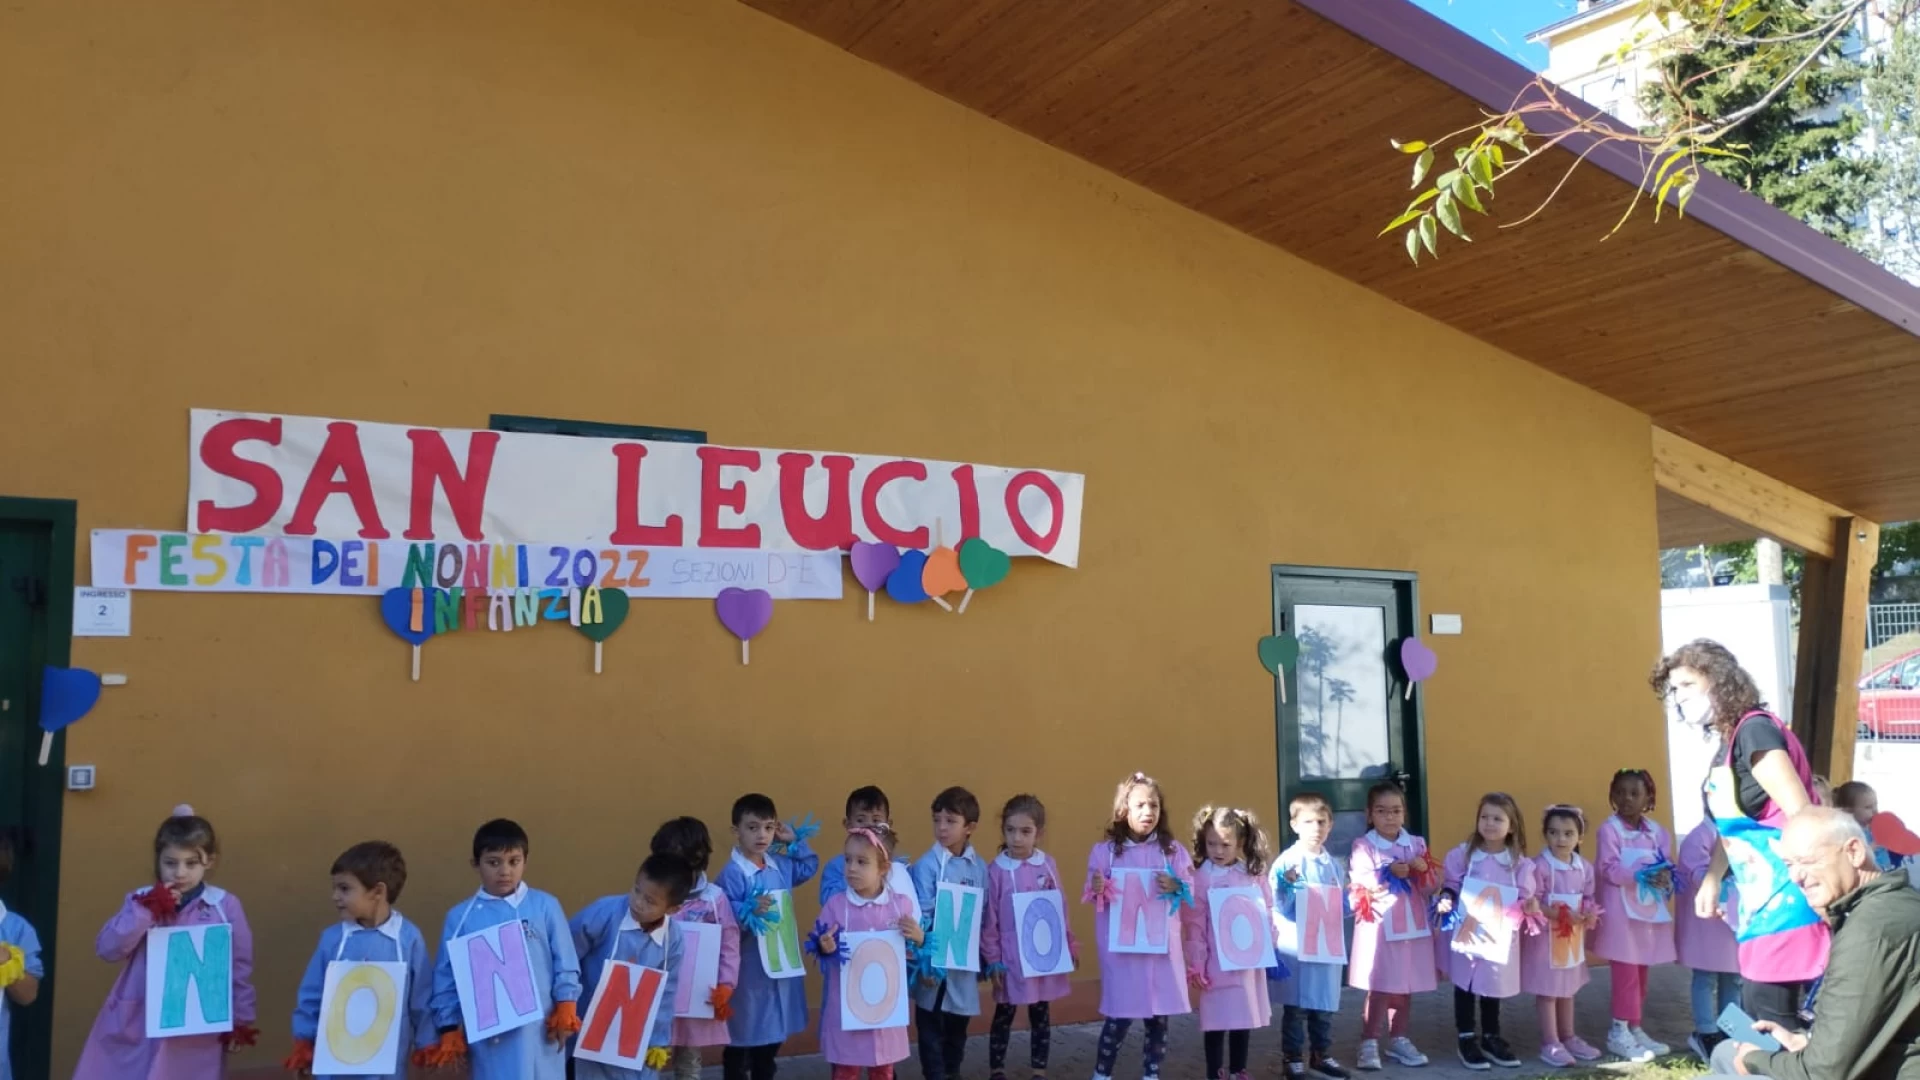 Festa dei Nonni 2022, una giornata speciale presso la scuola dell’infanzia San Leucio-edificio Tagliente di Isernia.